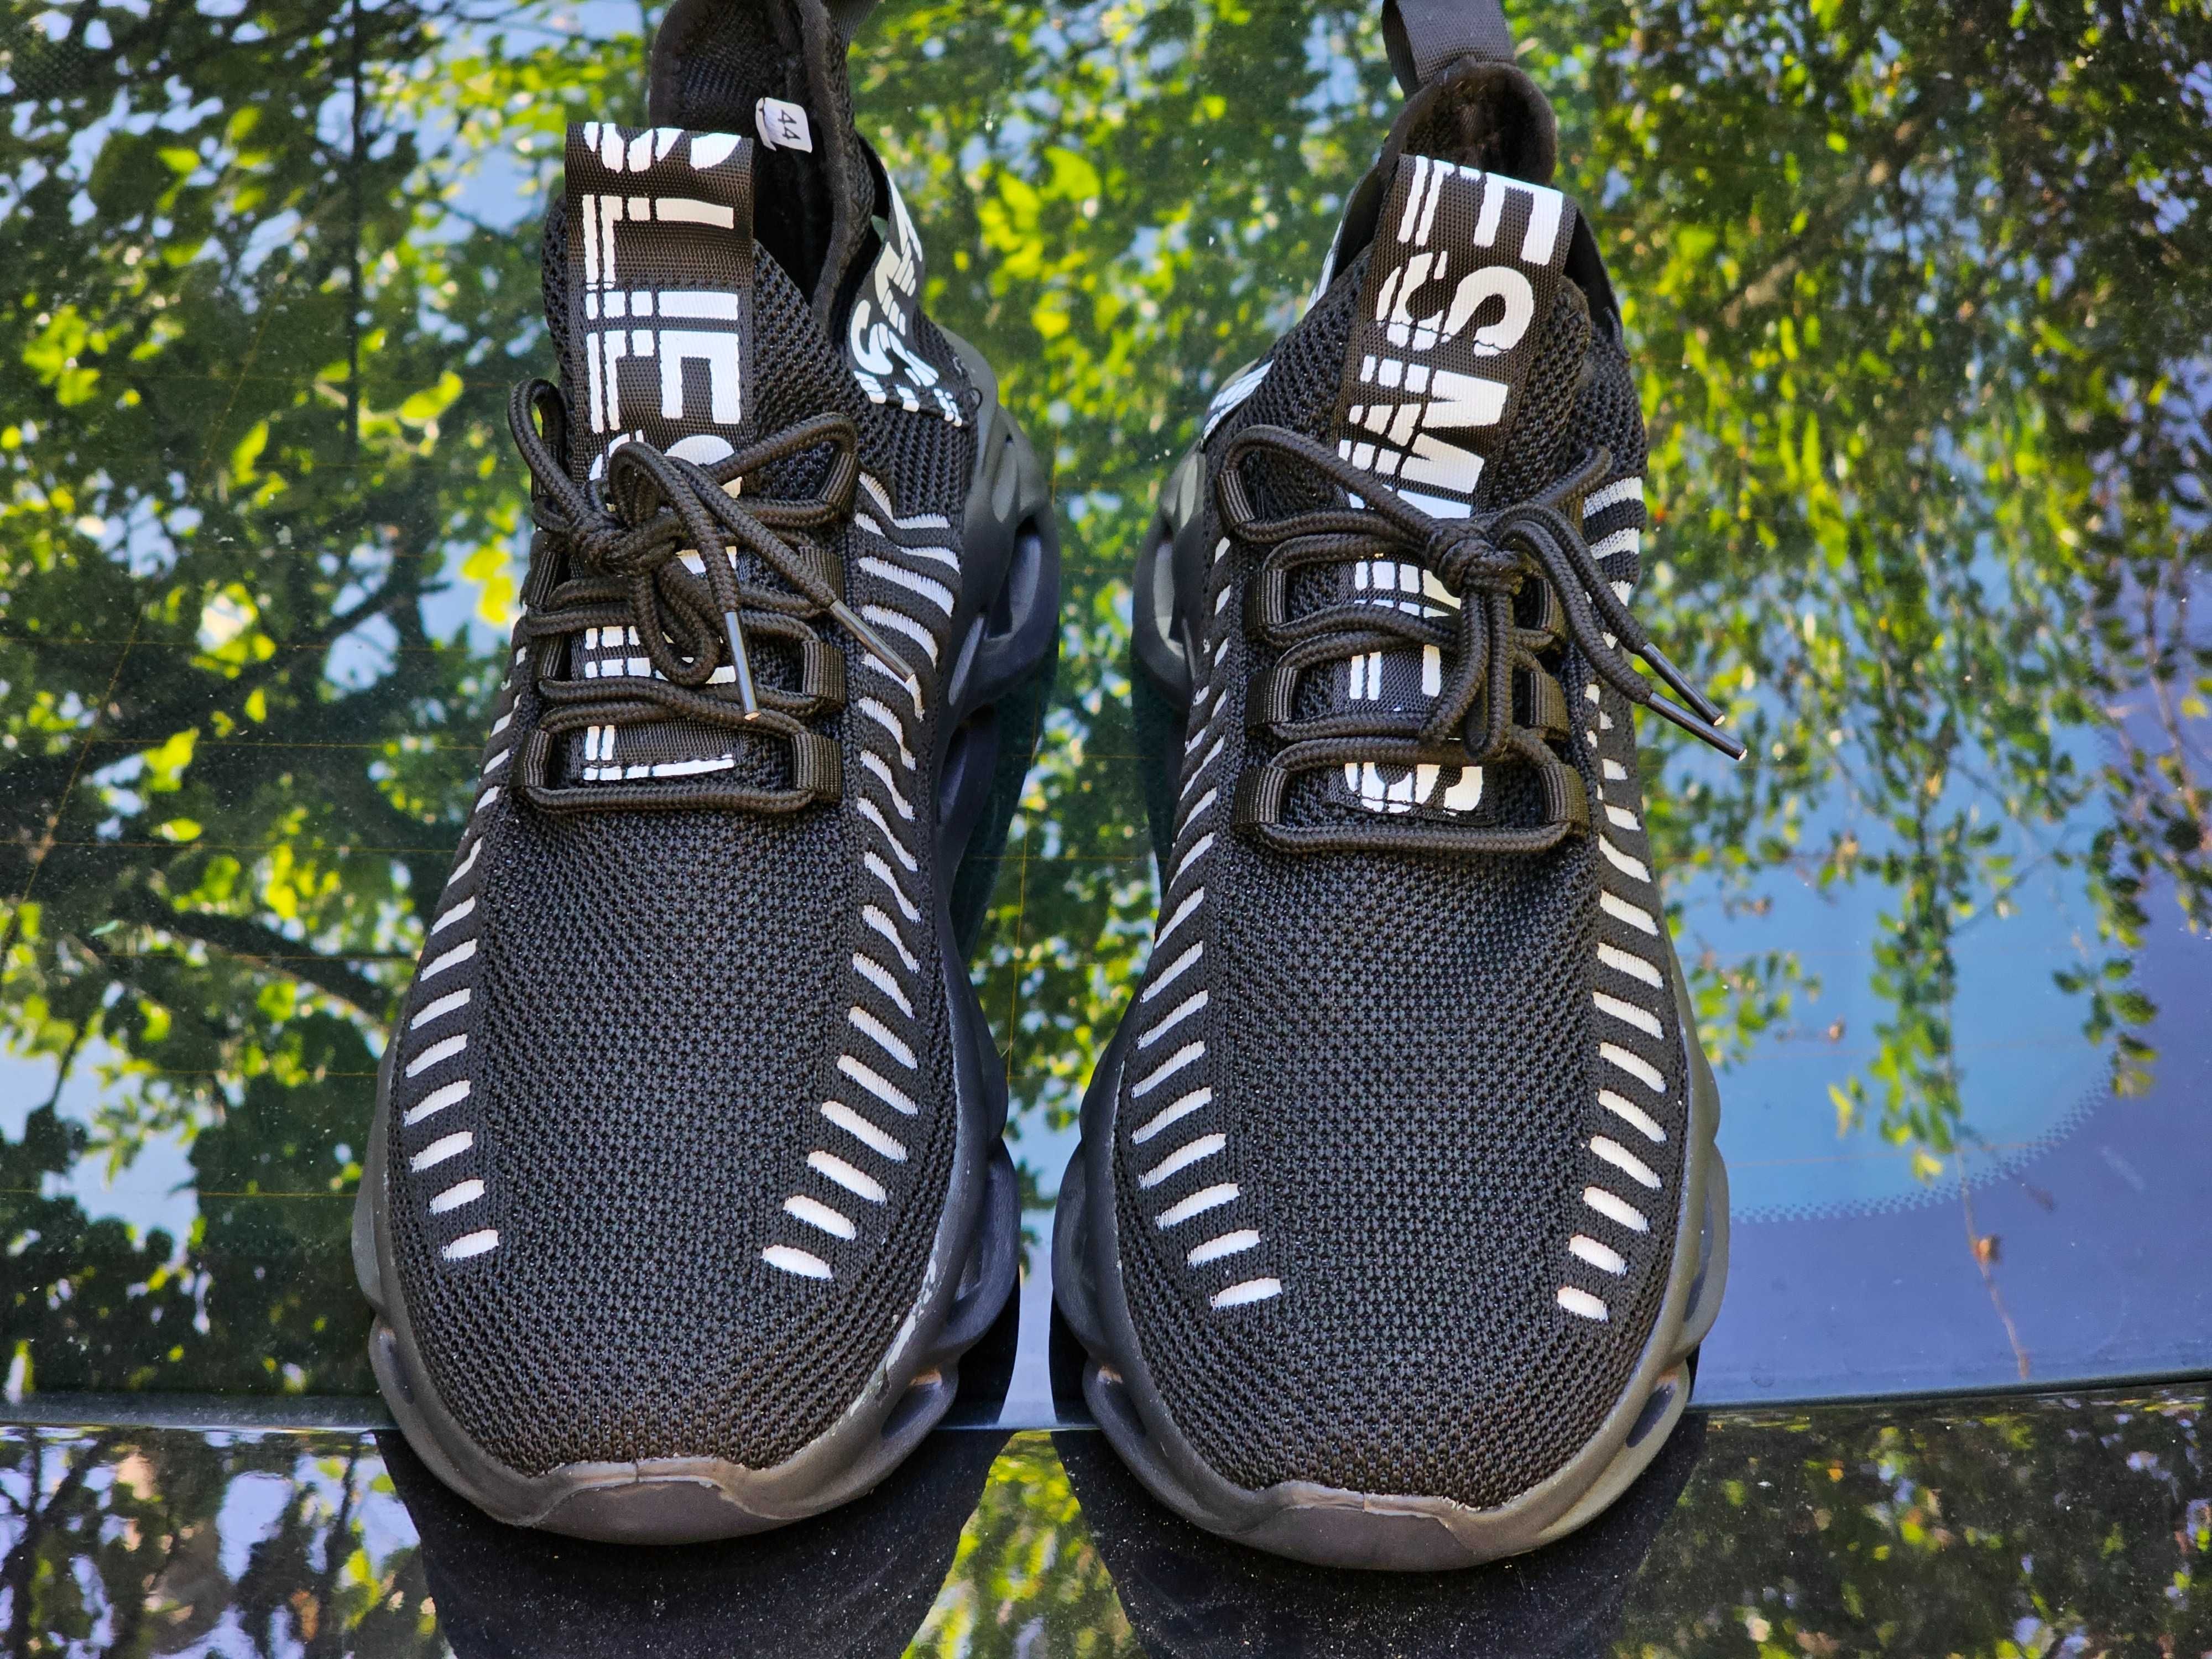 Чорні стильні чоловічі кросівки 44р. для бігу чи спортзалу